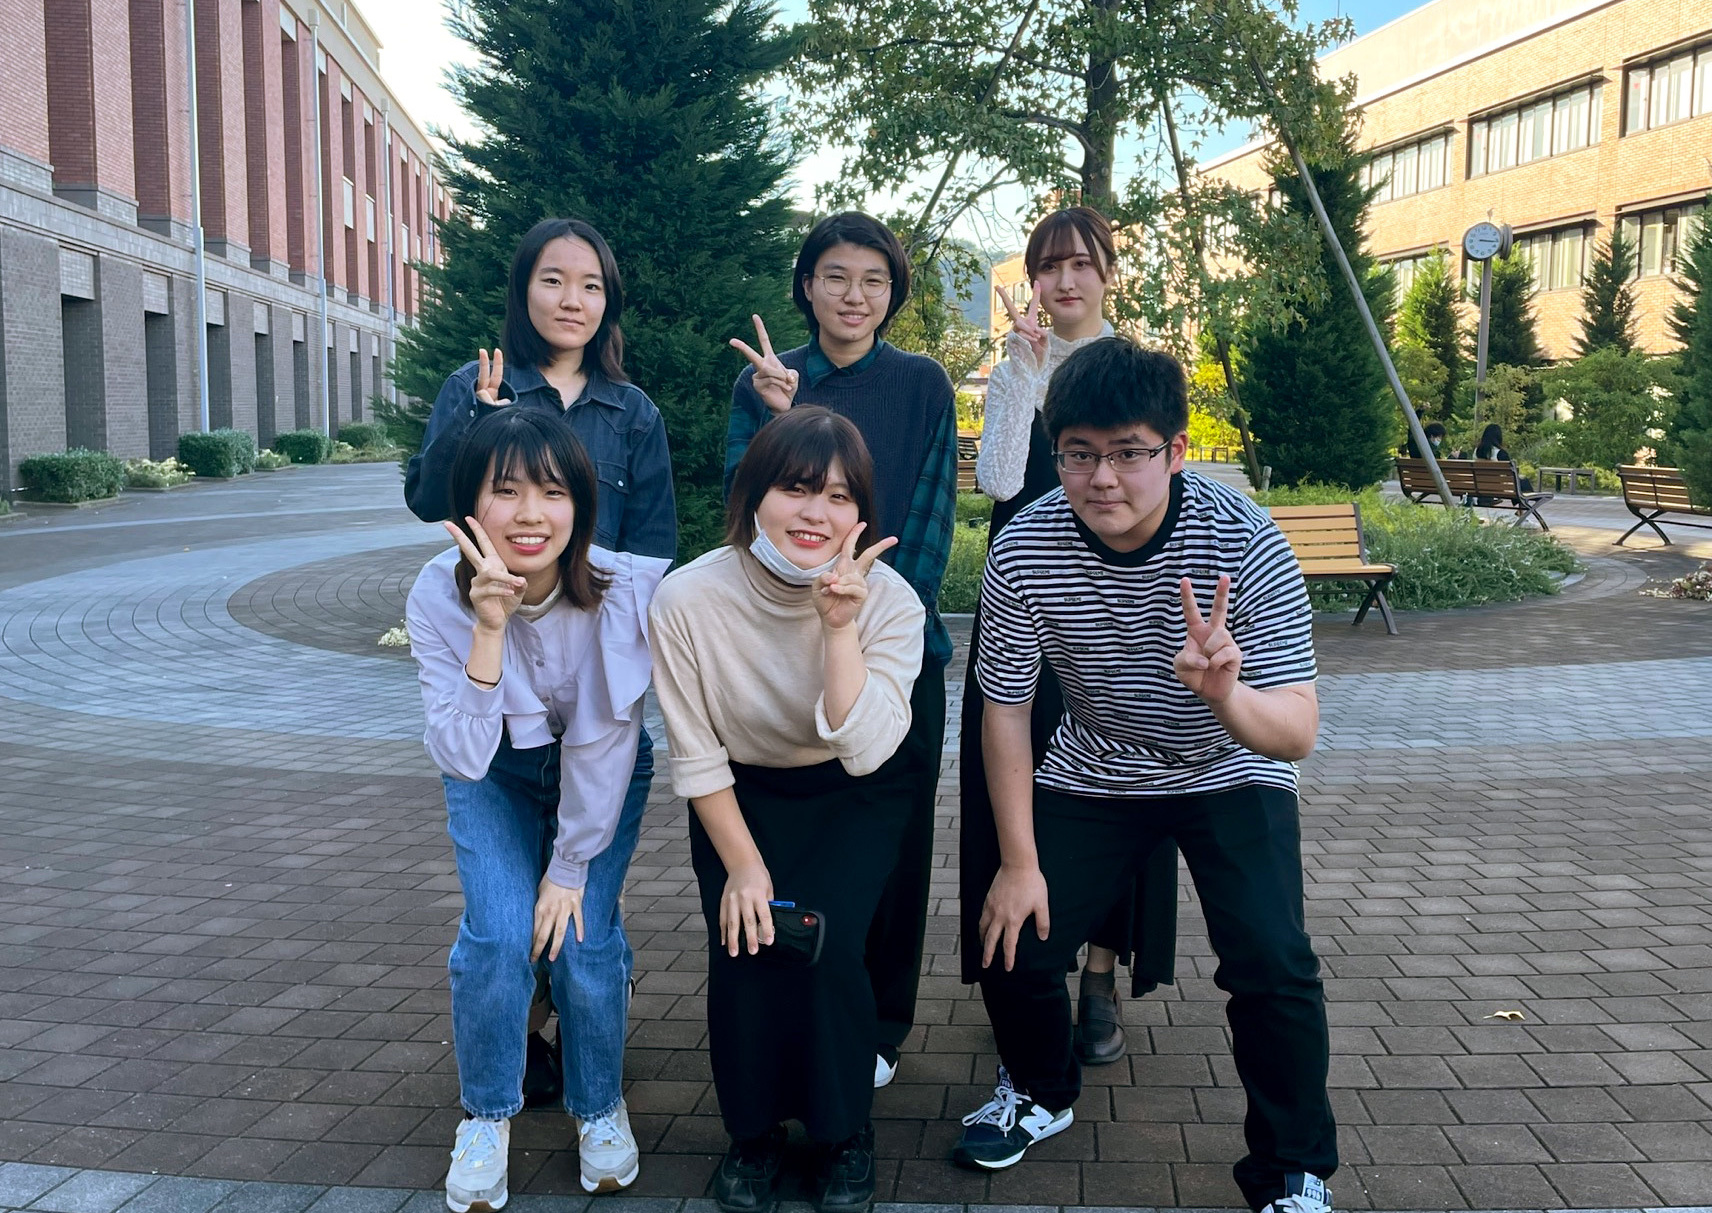 京都薬科大学統合薬科学系2018年度3回生